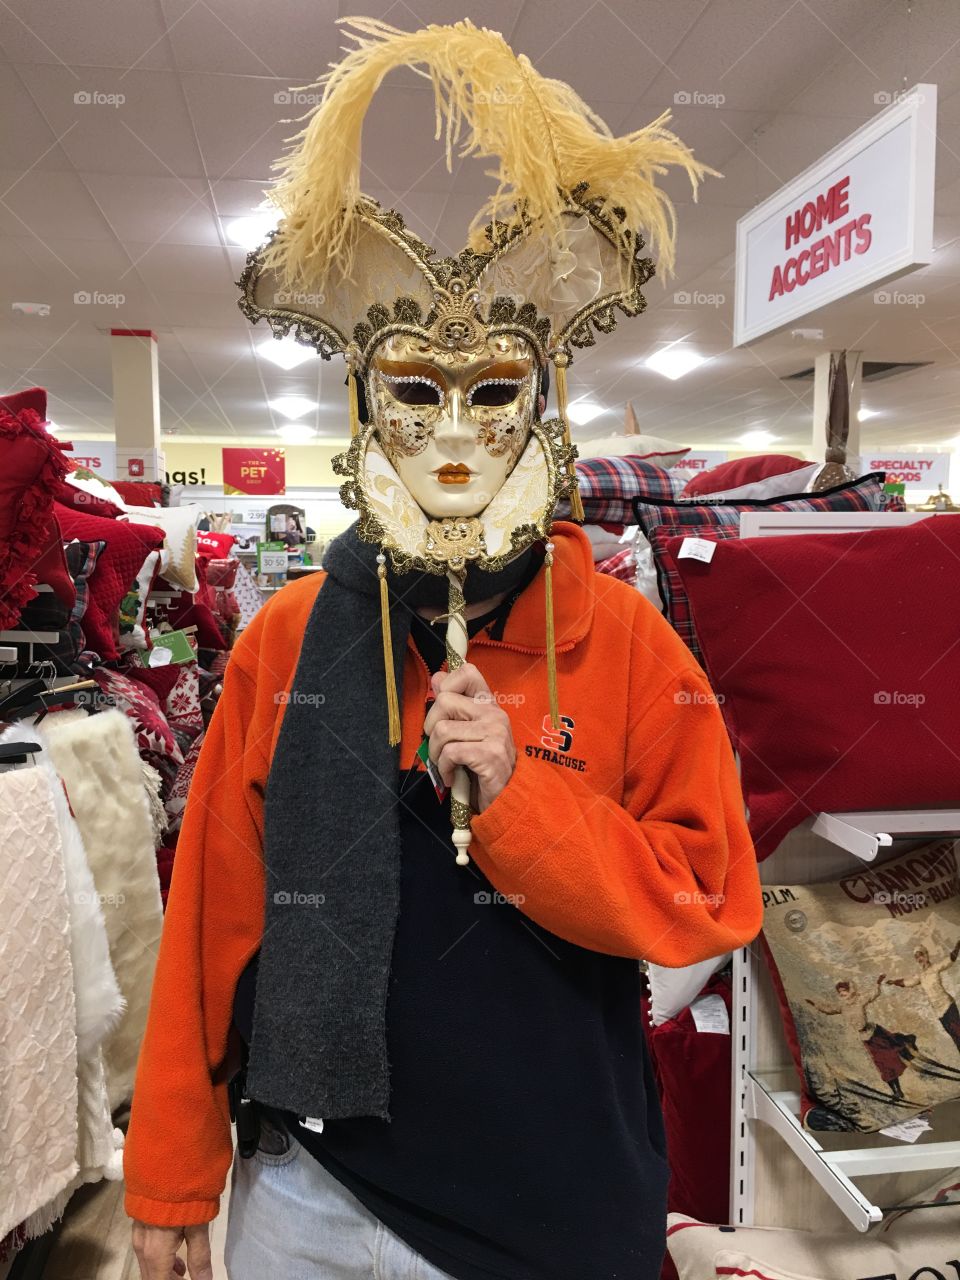 New Orleans festival mask